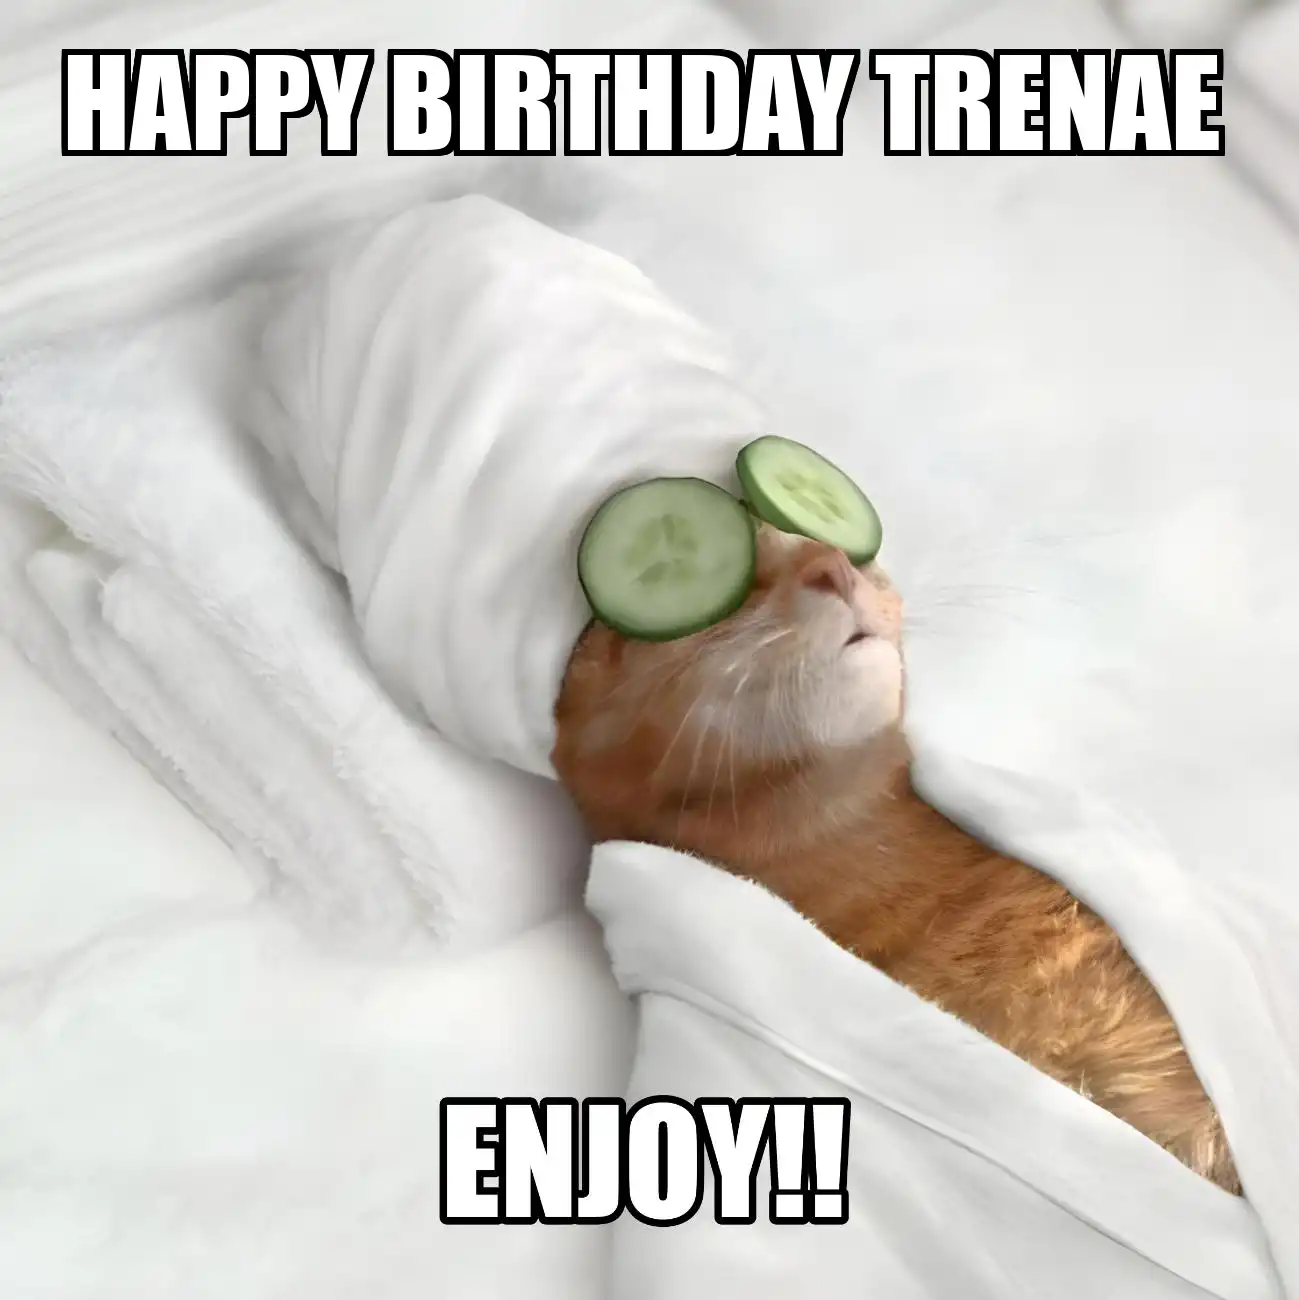 Happy Birthday Trenae Enjoy Cat Meme